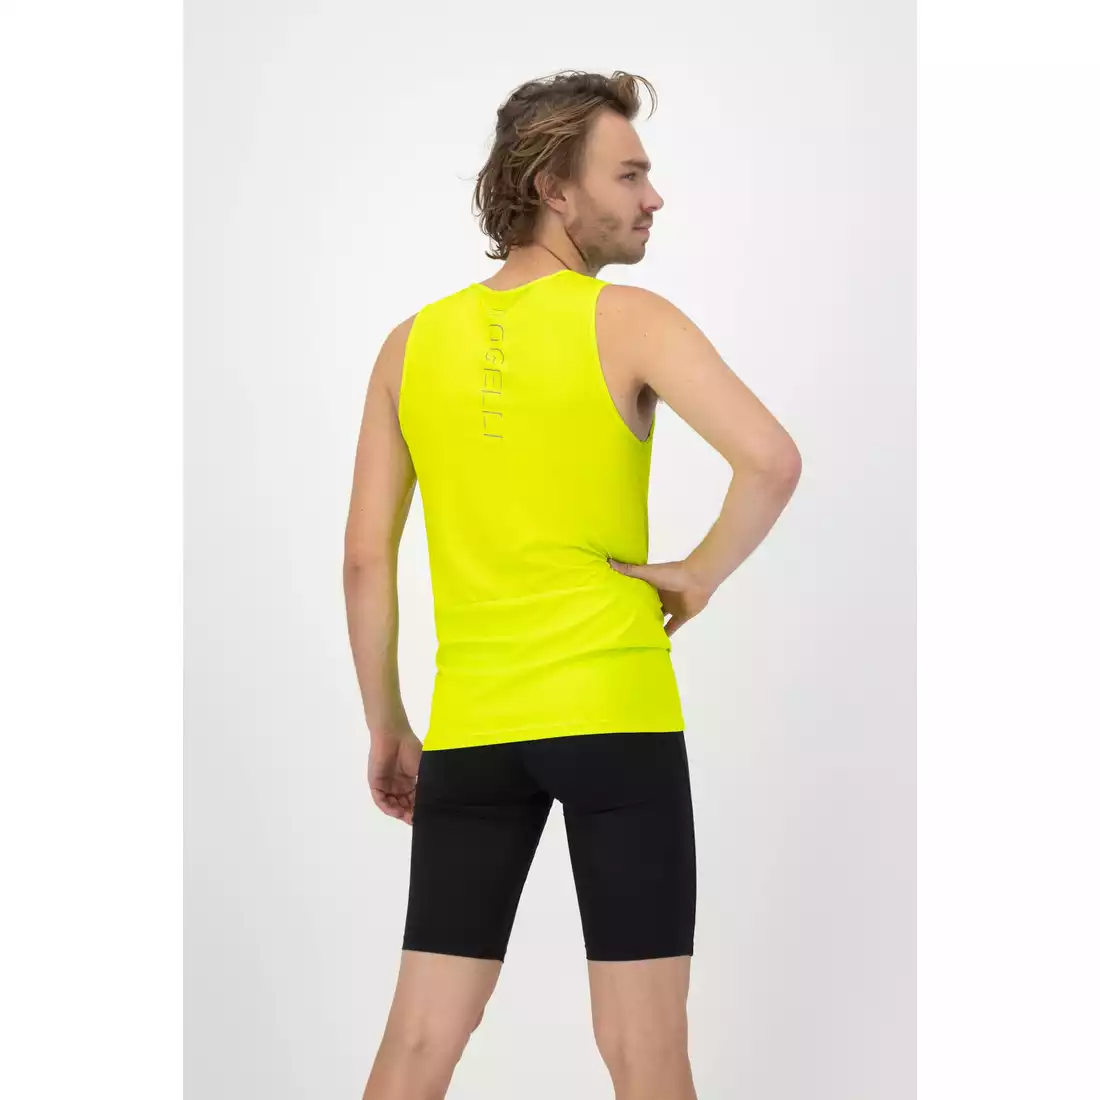 Rogelli CORE pánská běžecká vesta, fluor-žlutý